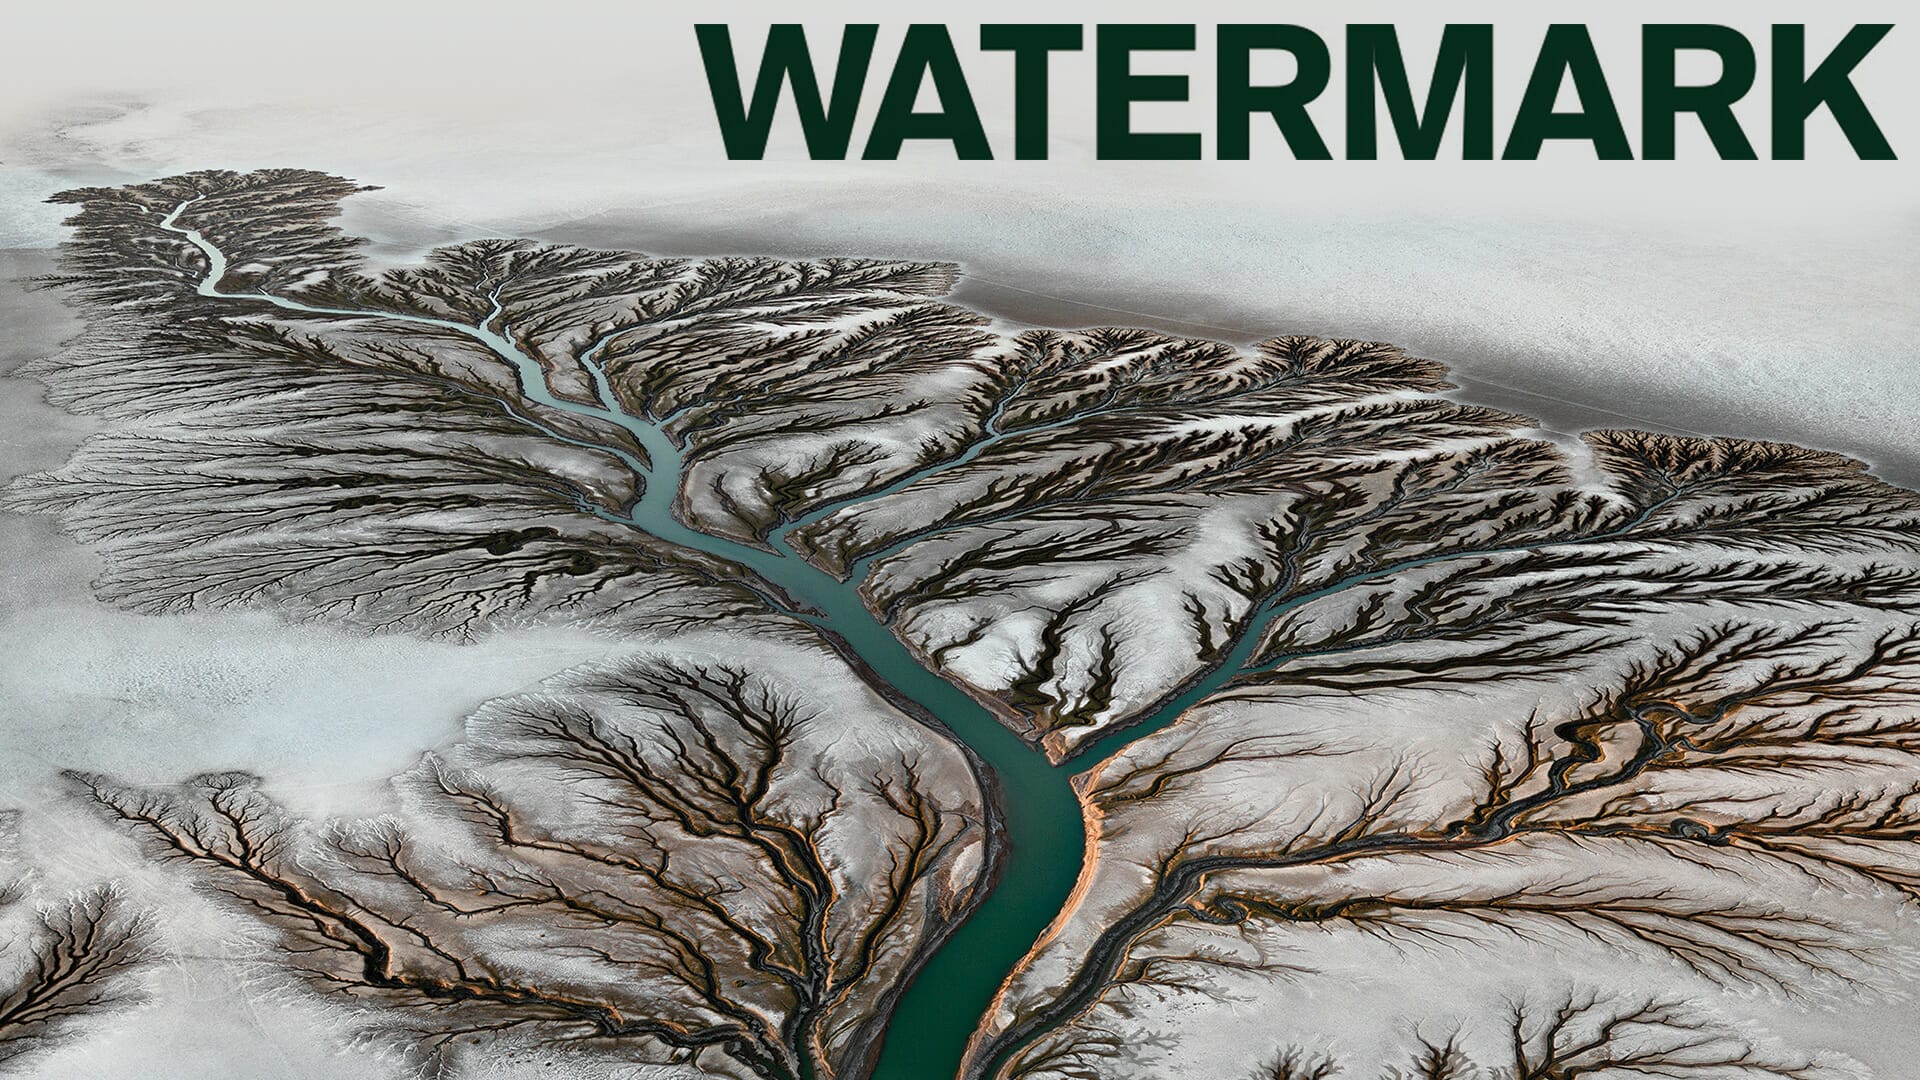 Watermark, lo spettacolare viaggio nell’acqua del mondo